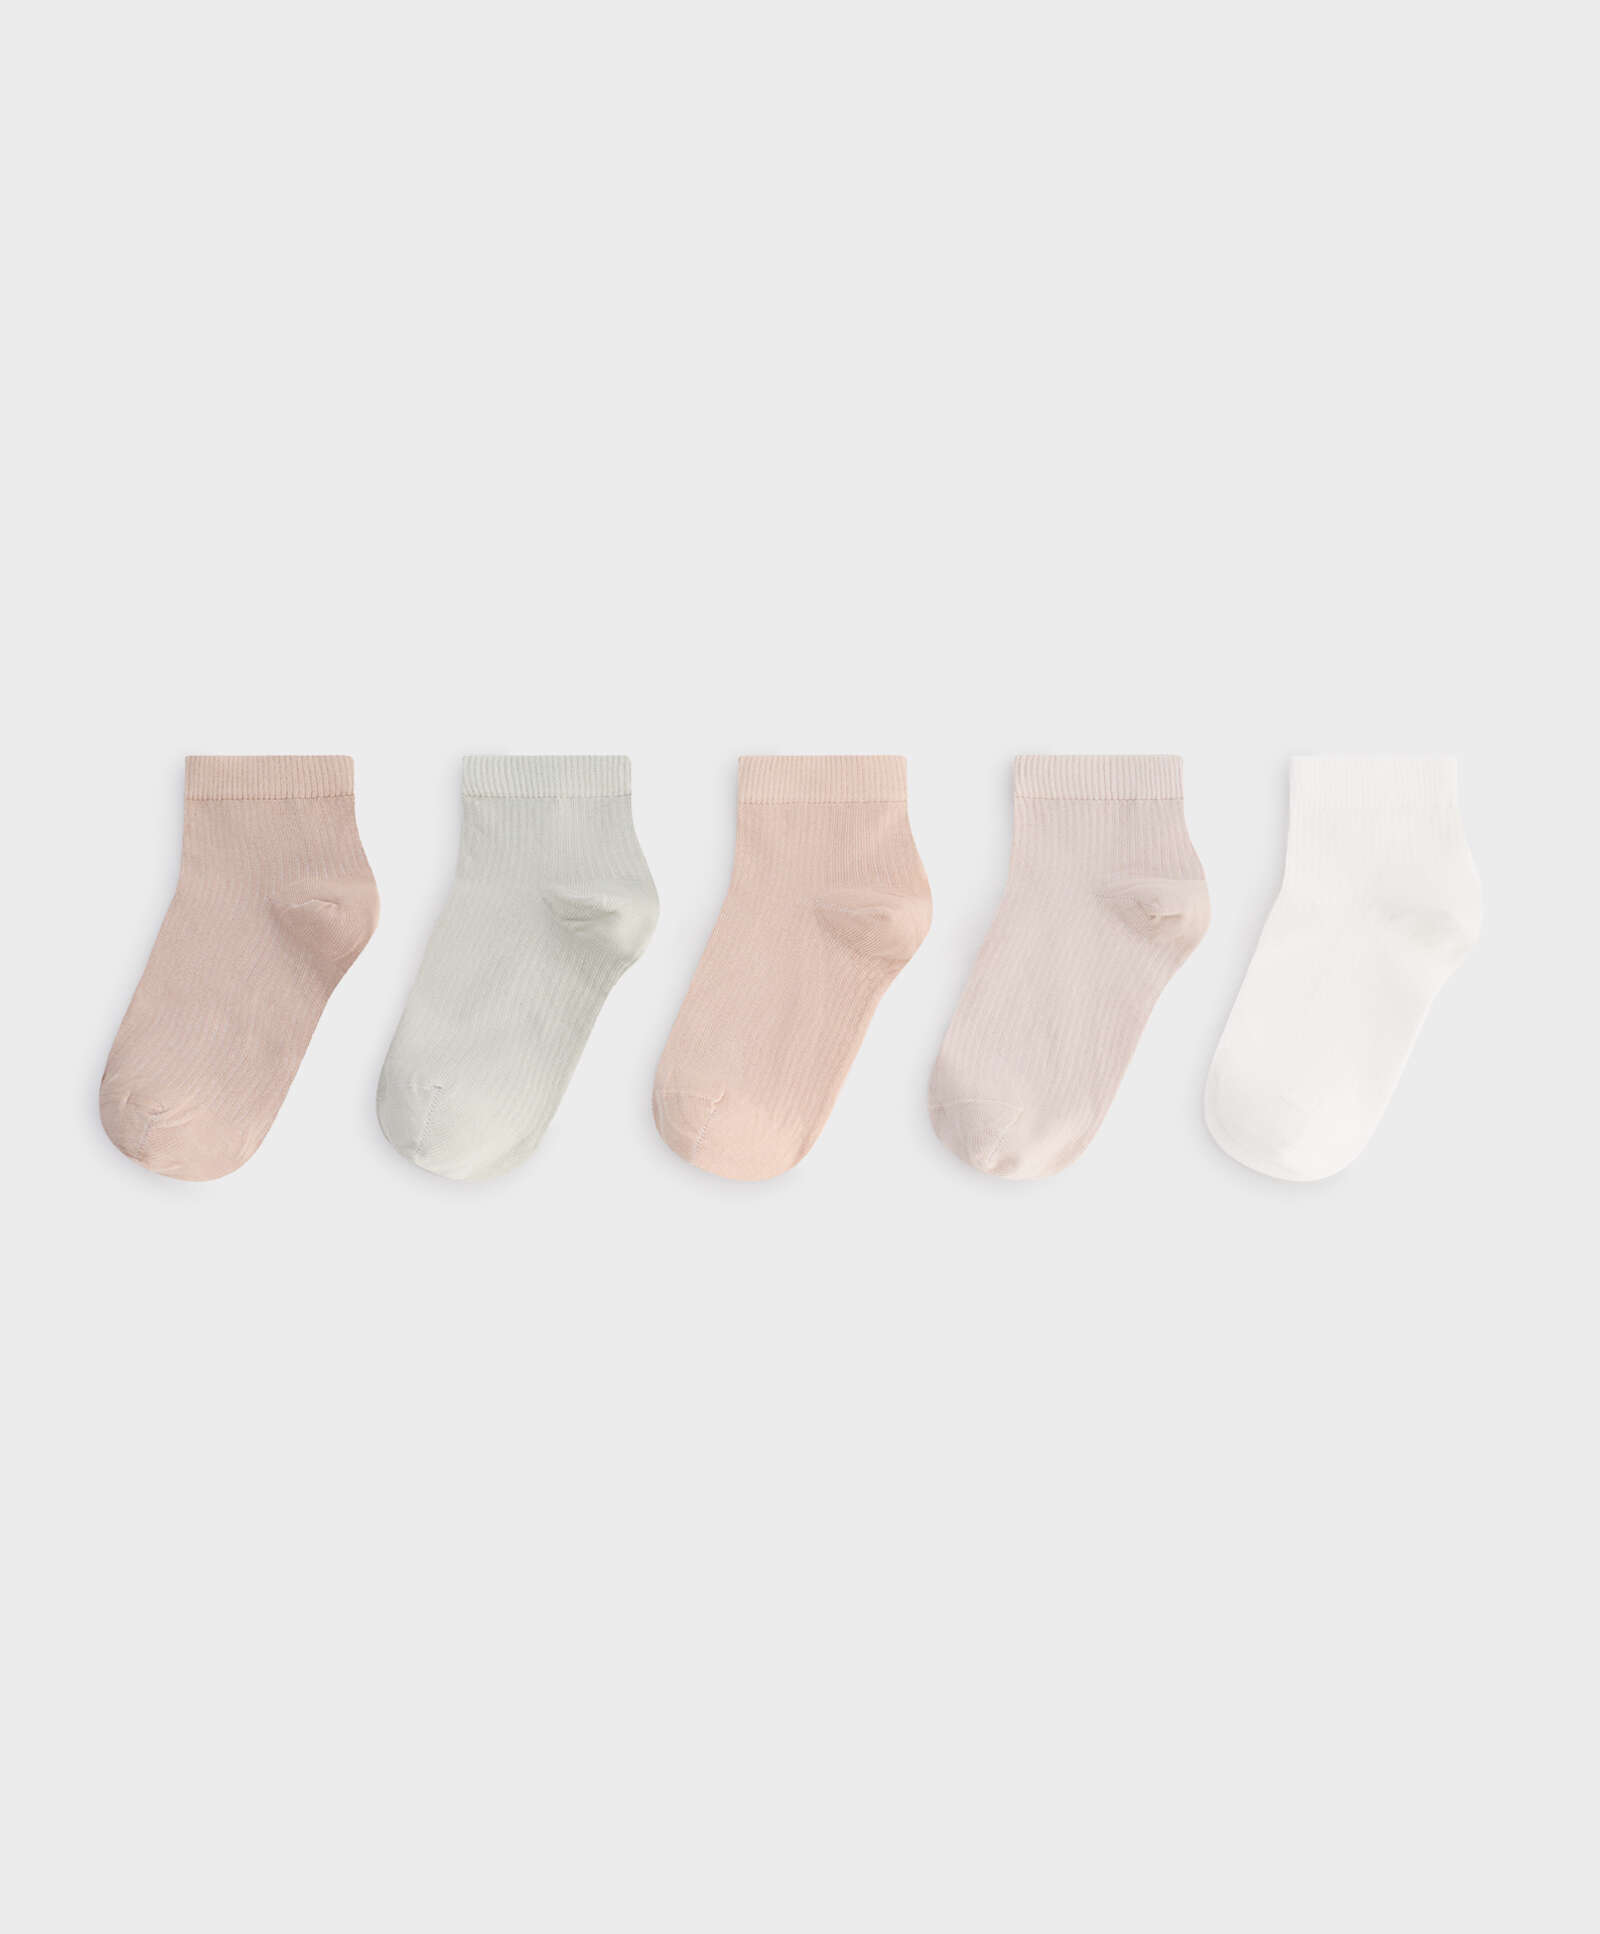 5 Paar viertellange gerippte Socken aus einem Baumwoll-Mix